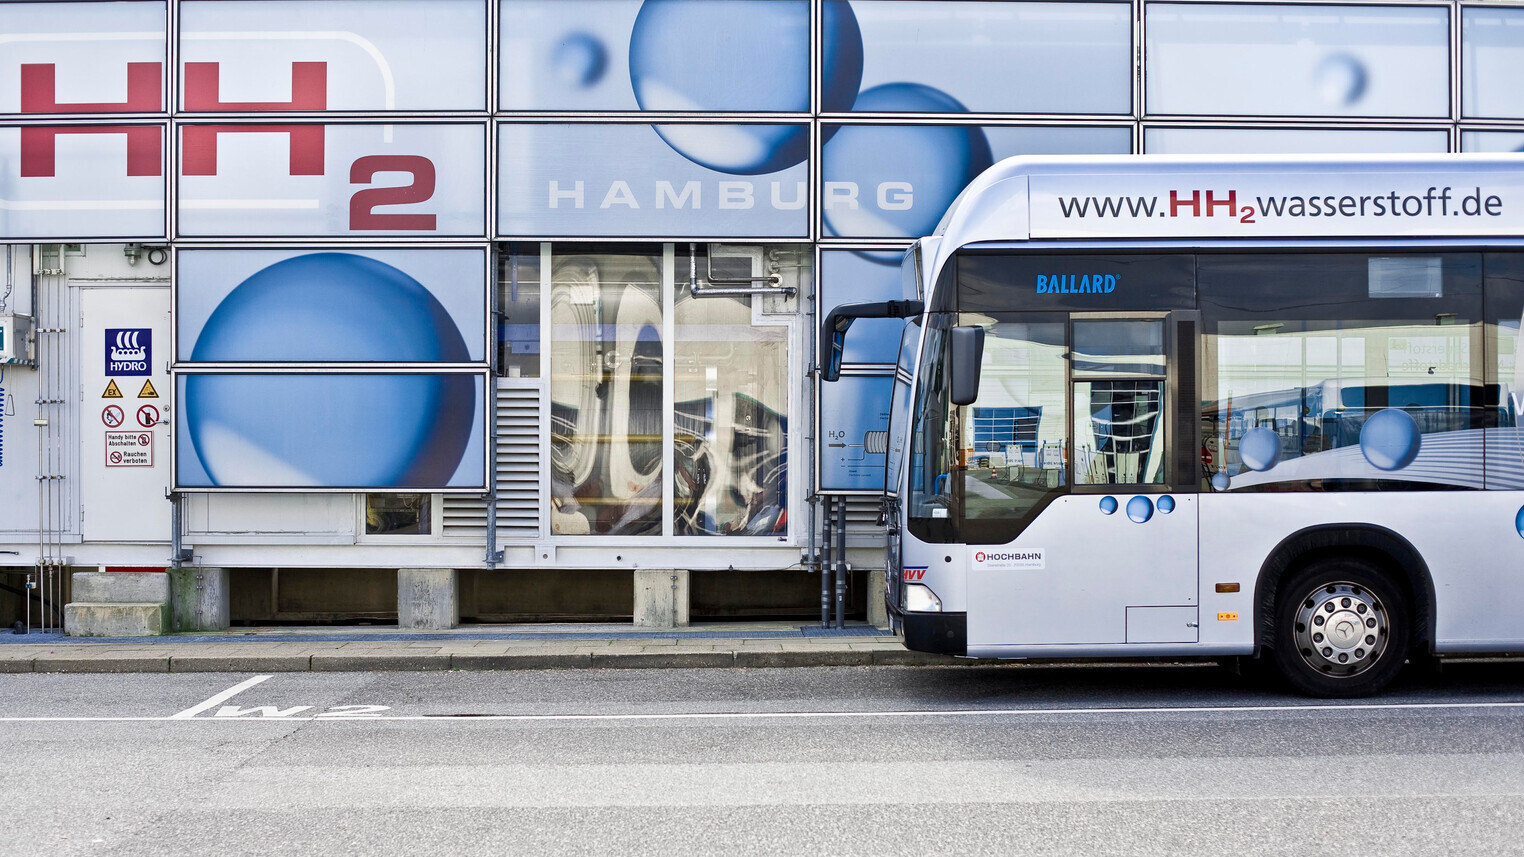 Innovationen am Wirtschaftsstandort: Ein Wasserstoff-Bus in Hamburg